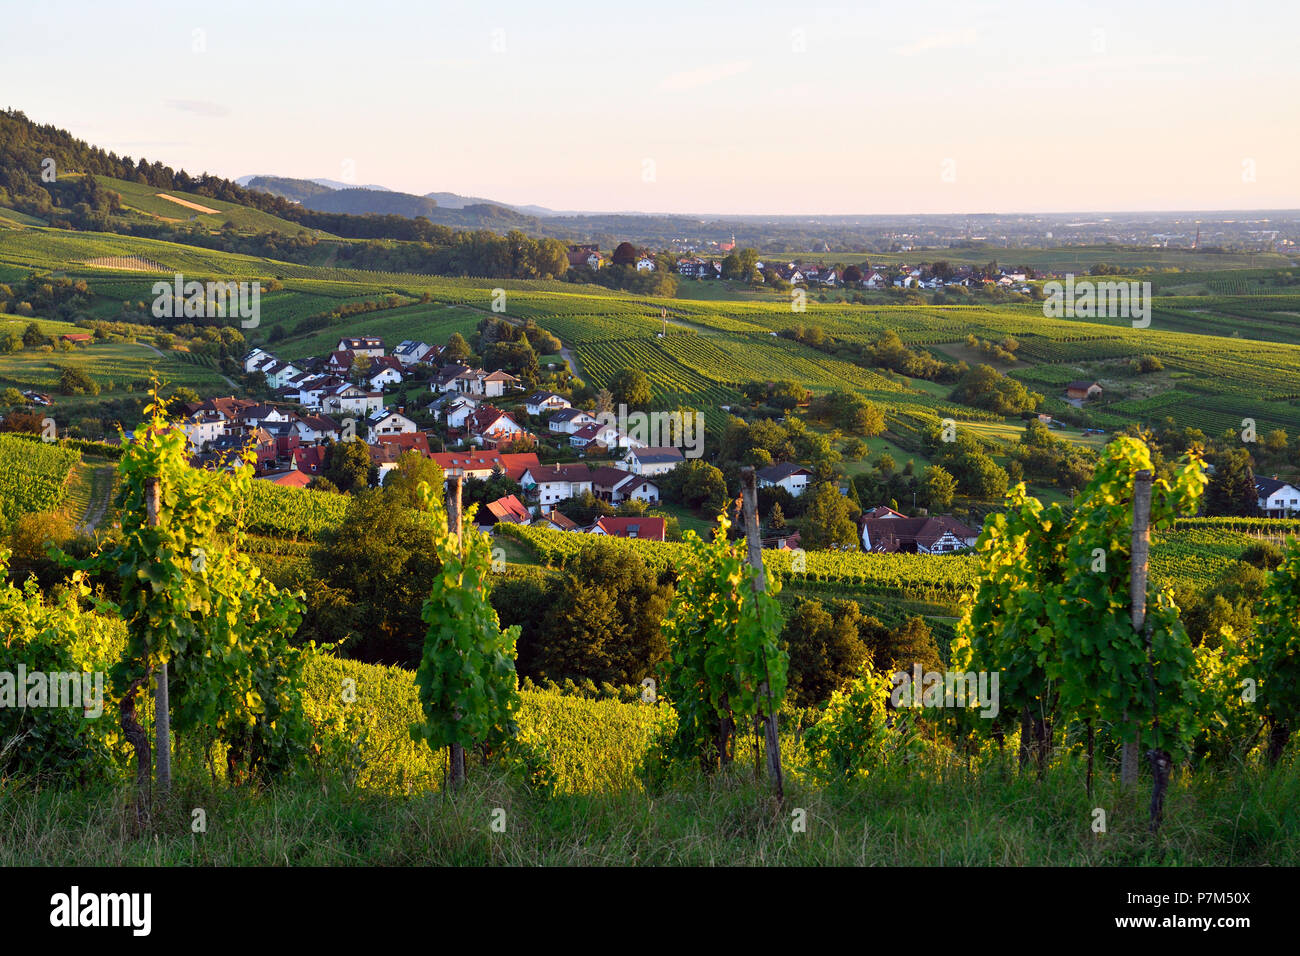 Alemania, Baden-Wurttemberg, Bosque Negro (Schwarzwald), Baden-Baden, la región vinícola Rebland Baden-Badener, viñedo, Neuweier Foto de stock